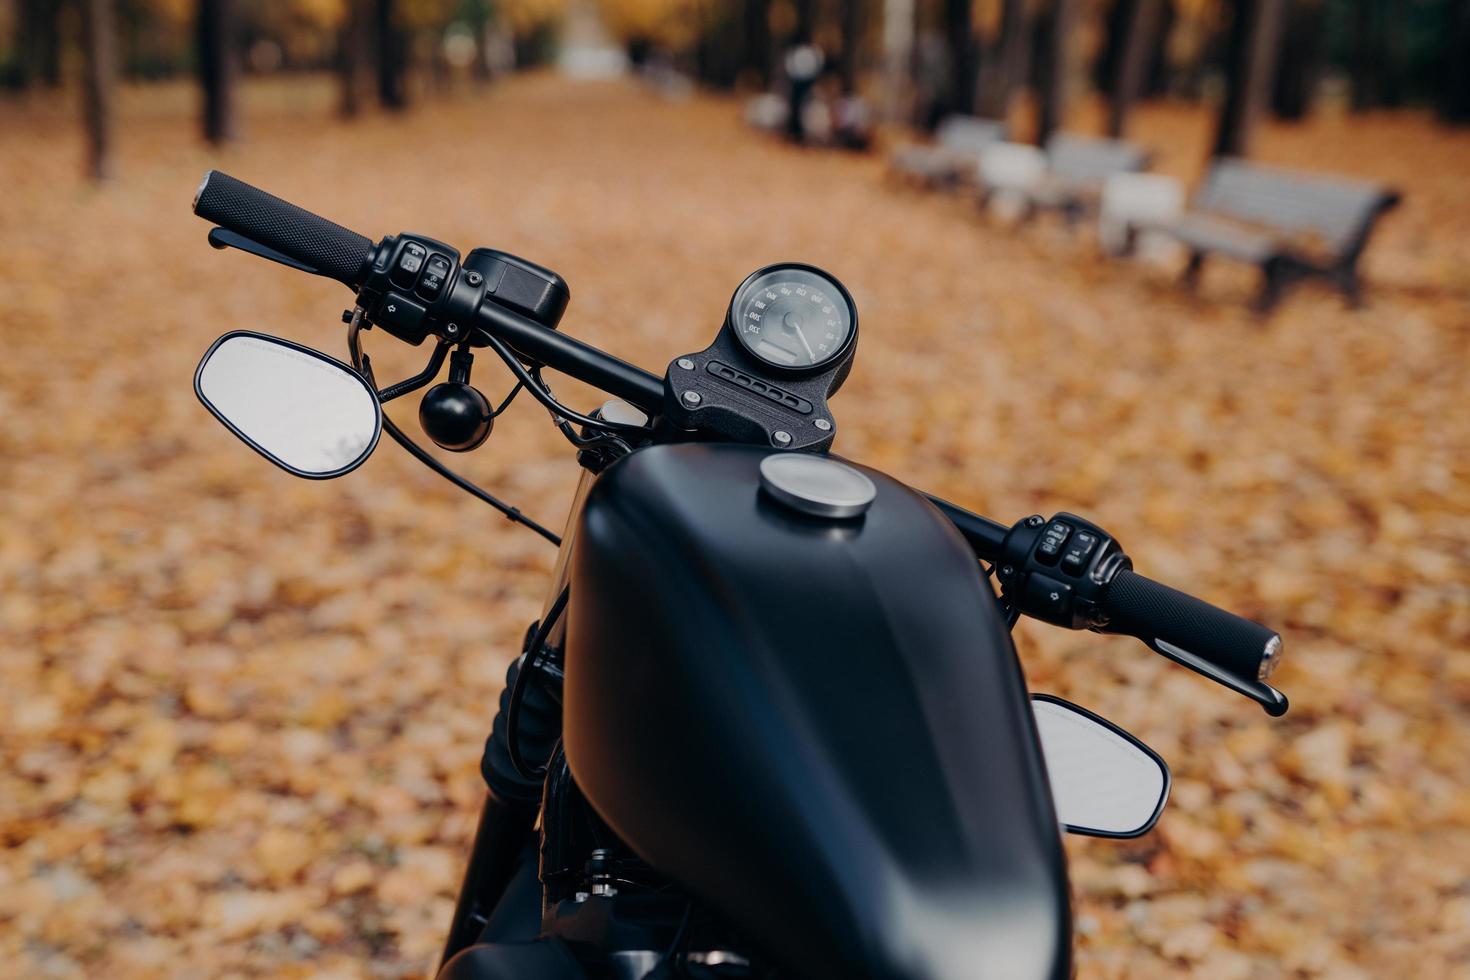 primer plano de motocicleta negra con velocímetro, soportes de manillar en el parque de otoño contra hojas y bancos caídos de color naranja. concepto de transporte bicicleta estacionada al aire libre foto